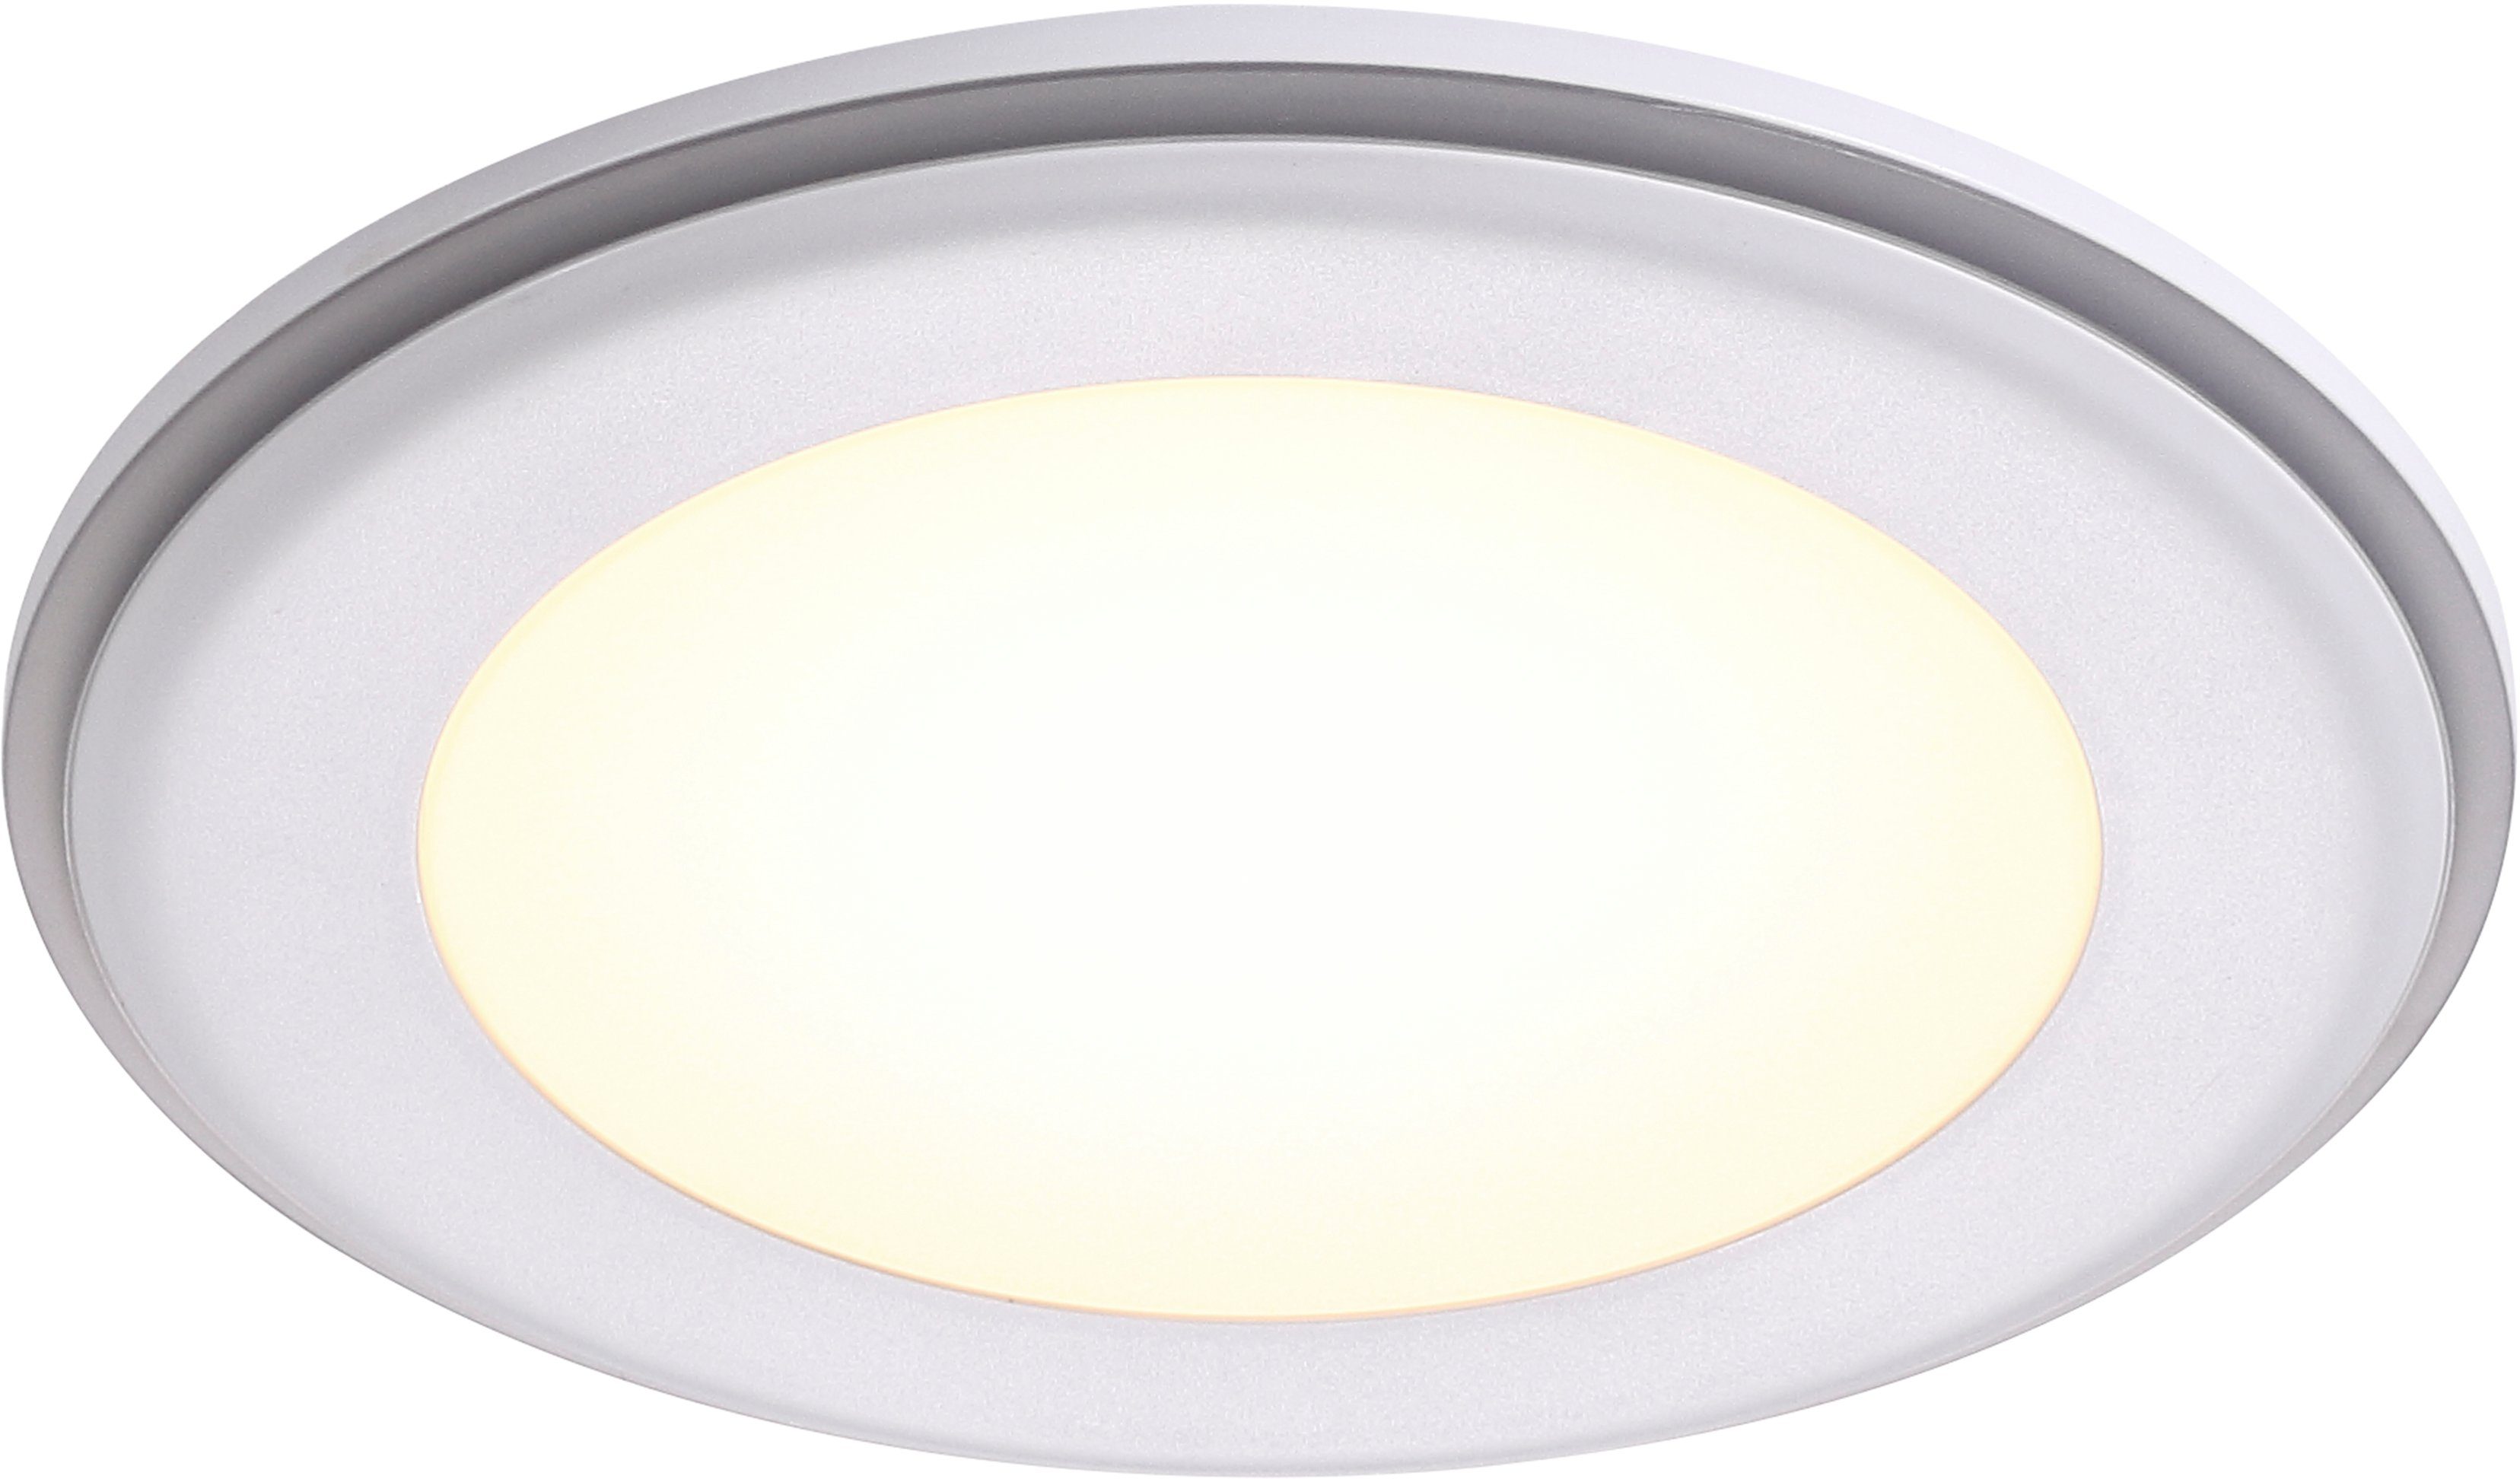 Nordlux integriert, fest Elkton, Einbauleuchte Dimmer LED LED integriertem Warmweiß, Einbaustrahler mit